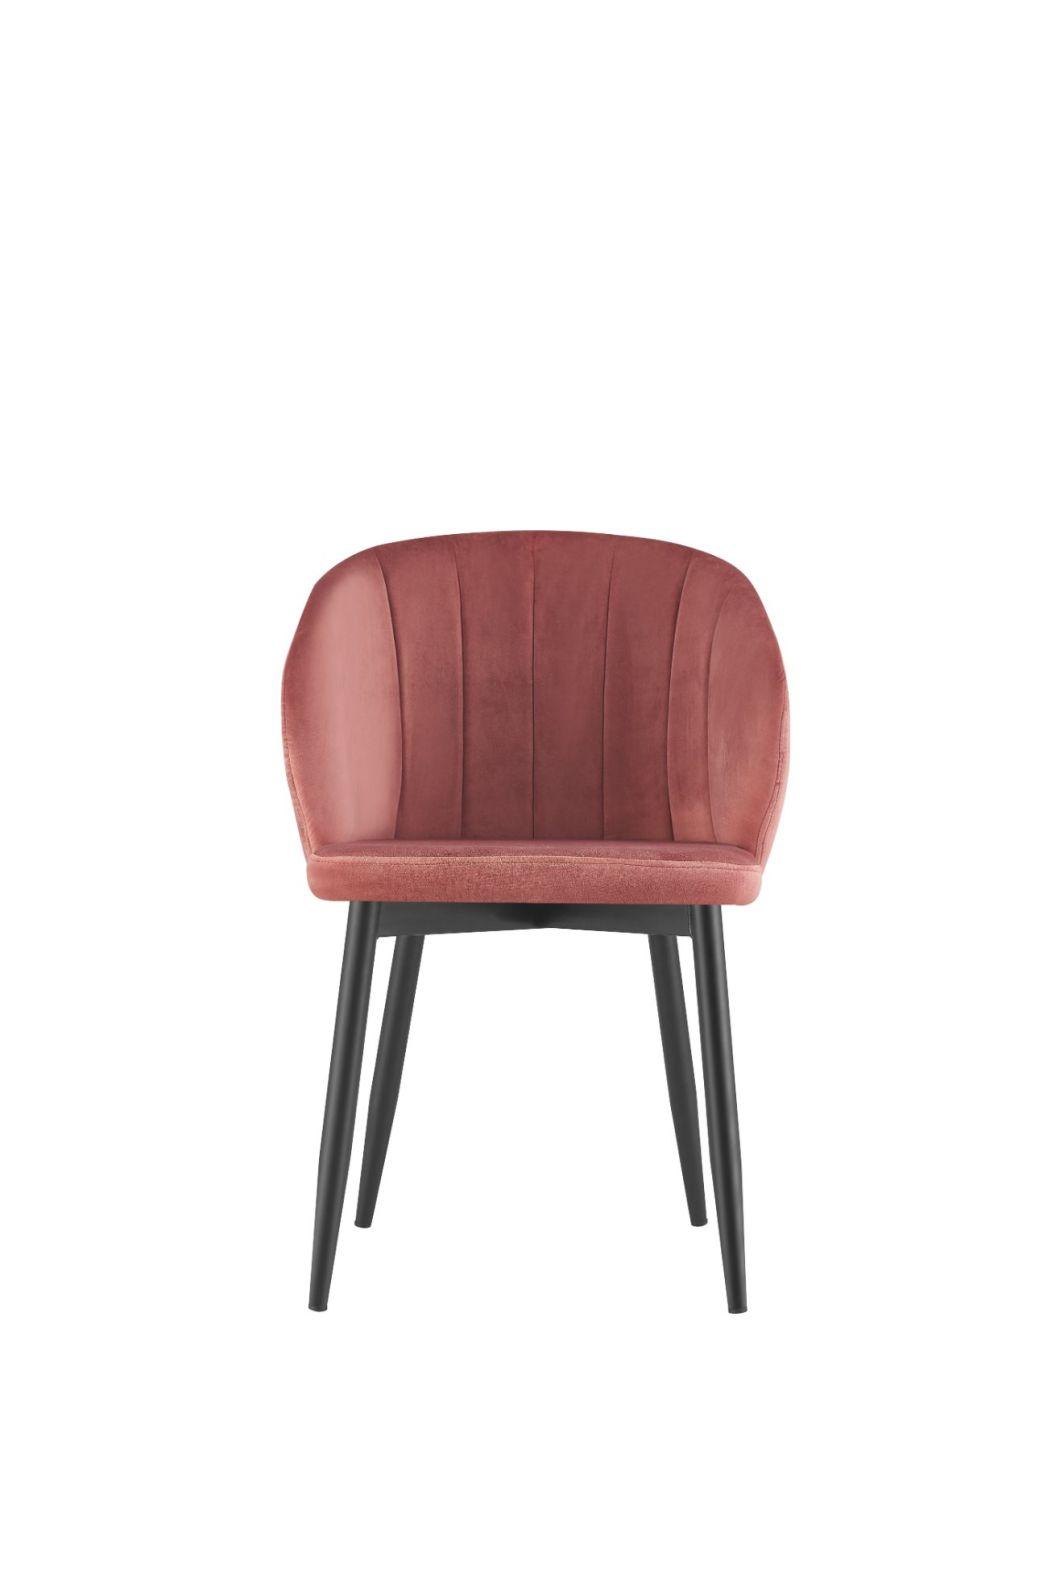 Modern European Style Hotel Restaurant Chair Metal Legs Velvet Dining Chair